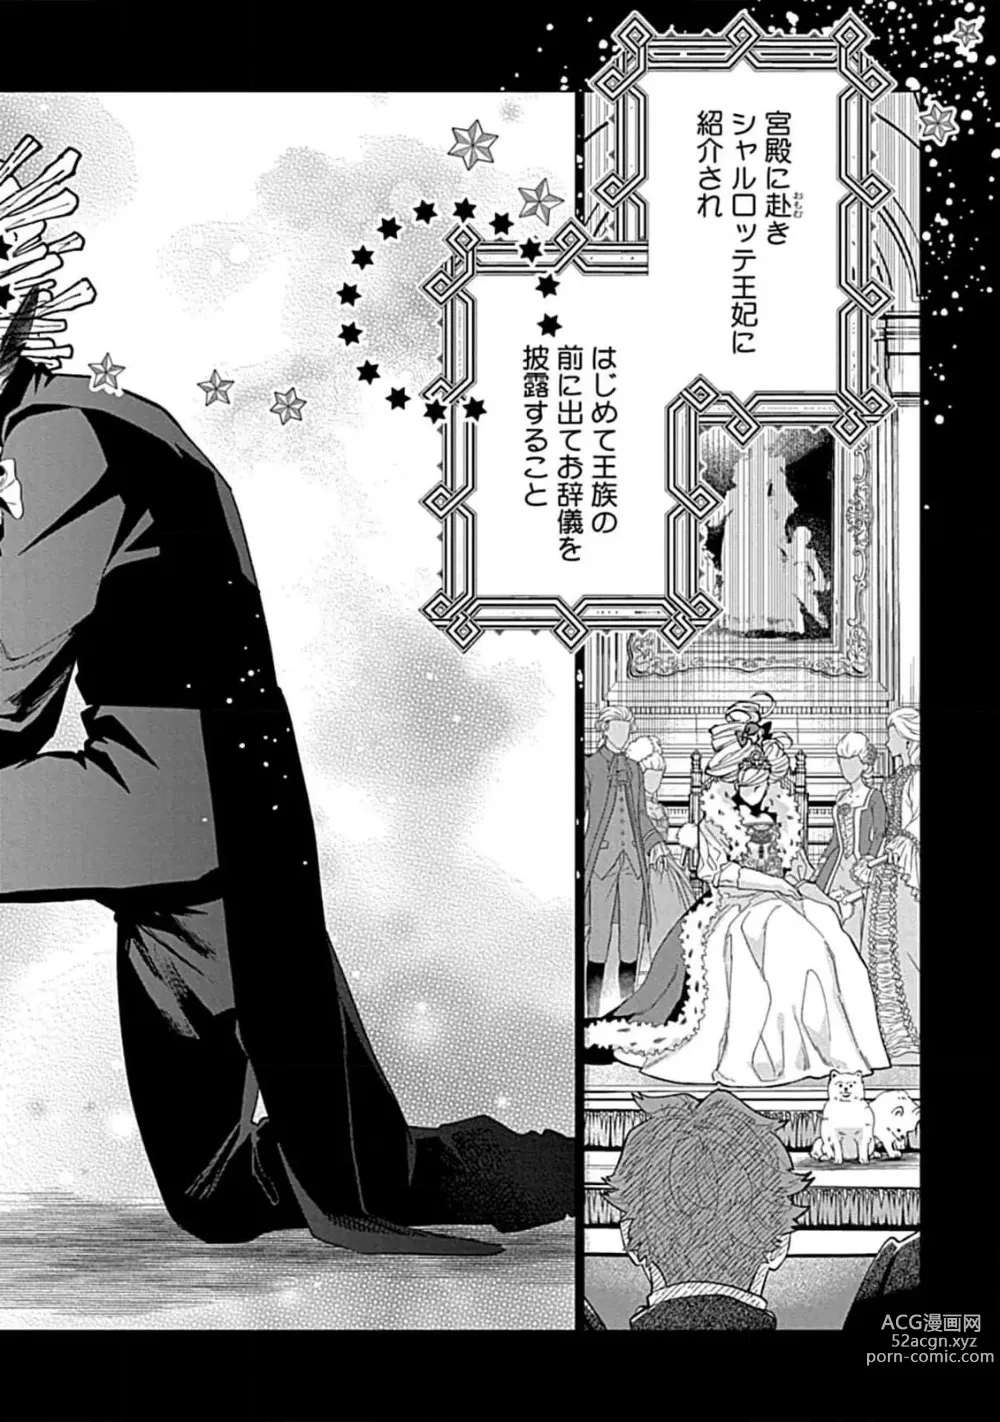 Page 10 of manga Hoshikuzu no Debutante - Debutante of Stardust 1